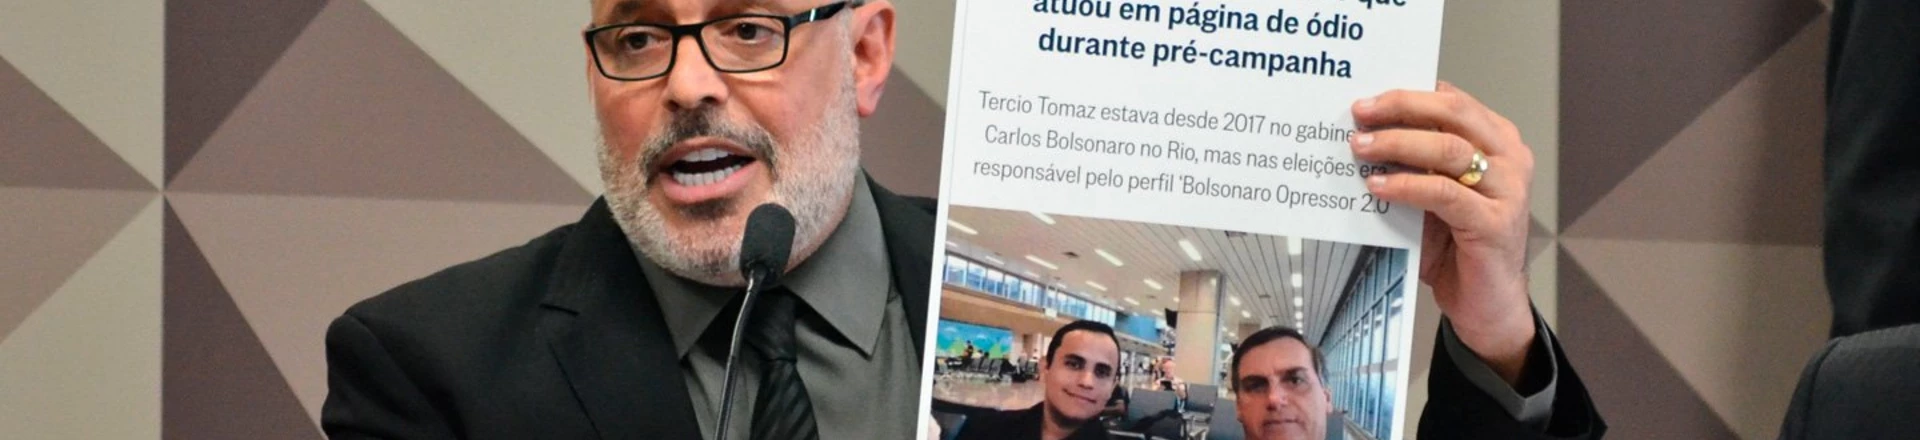 O deputado Alexandre Frota (PSDB) compareceu na tarde desta quarta-feira (30) à CPMI das Fake News, no Senado Federal, em Brasília. O deputado já havia declarado a existência de rede organizada para a propagação de fake news.